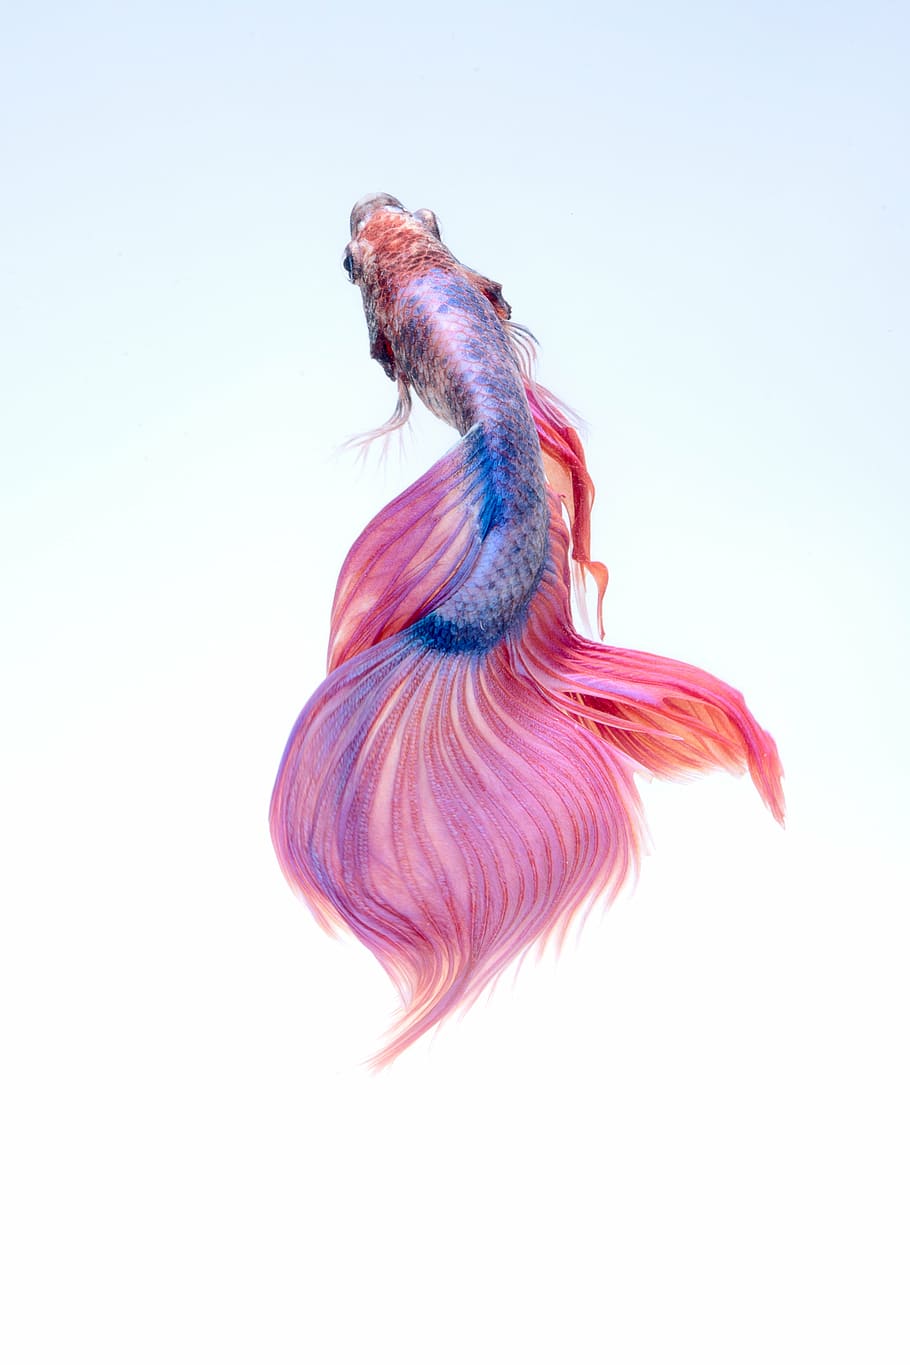 azul, rosa, peixe betta, peixe, embaixo da agua, vermelho, aquário, colorido, um animal, vida marinha